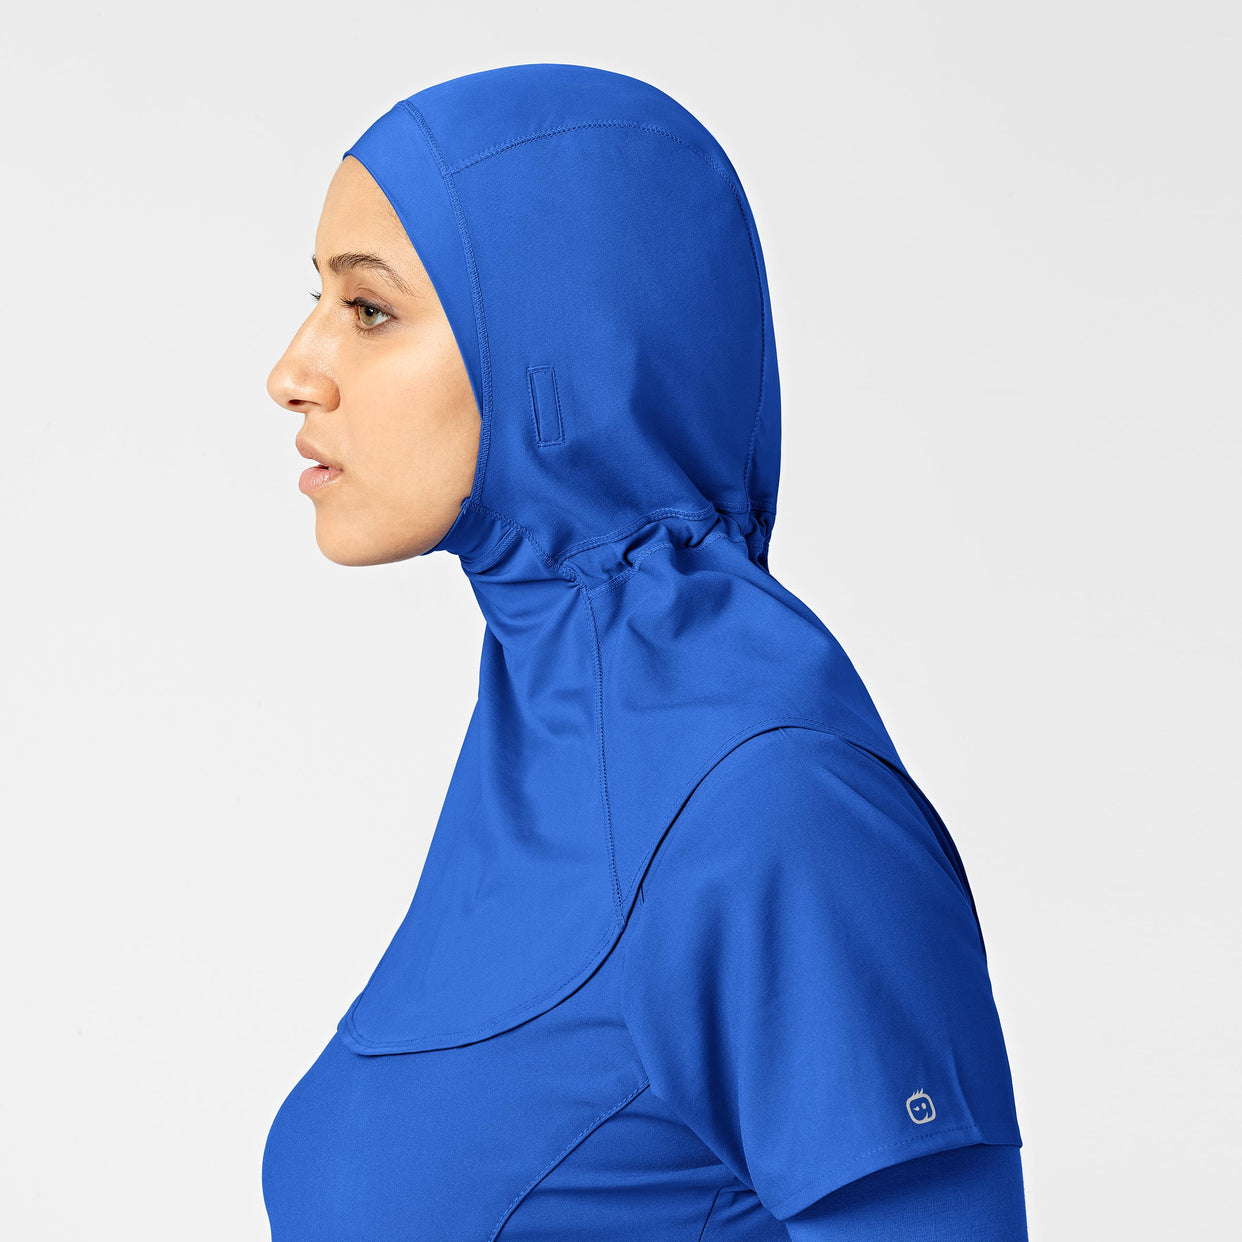 W123 Women's Hijab - Royal